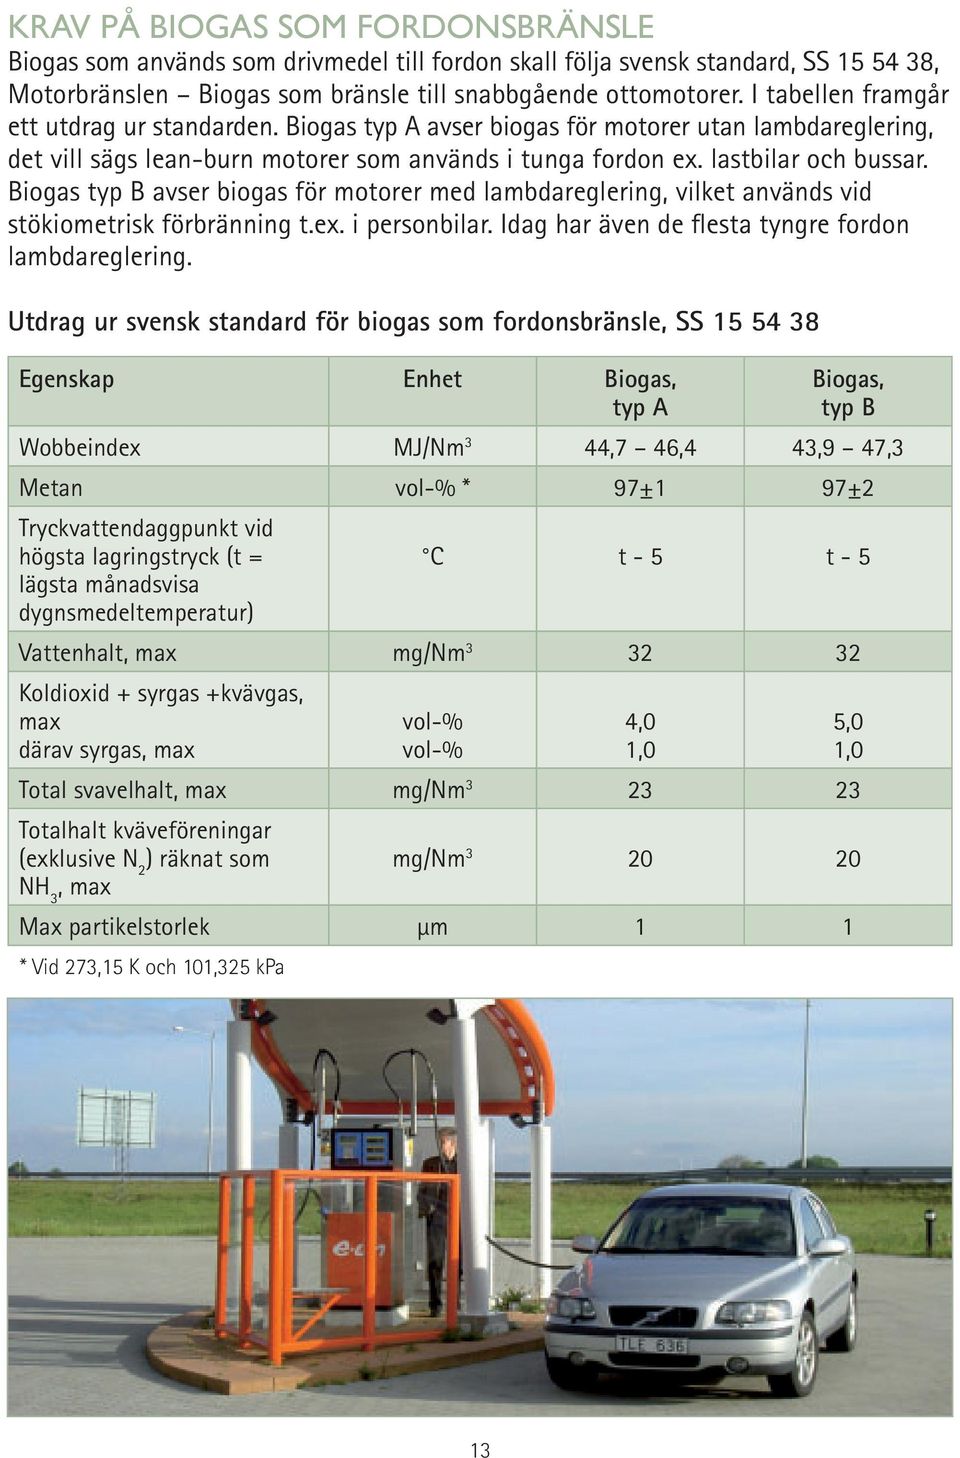 Biogas typ B avser biogas för motorer med lambdareglering, vilket används vid stökiometrisk förbränning t.ex. i personbilar. Idag har även de flesta tyngre fordon lambdareglering.